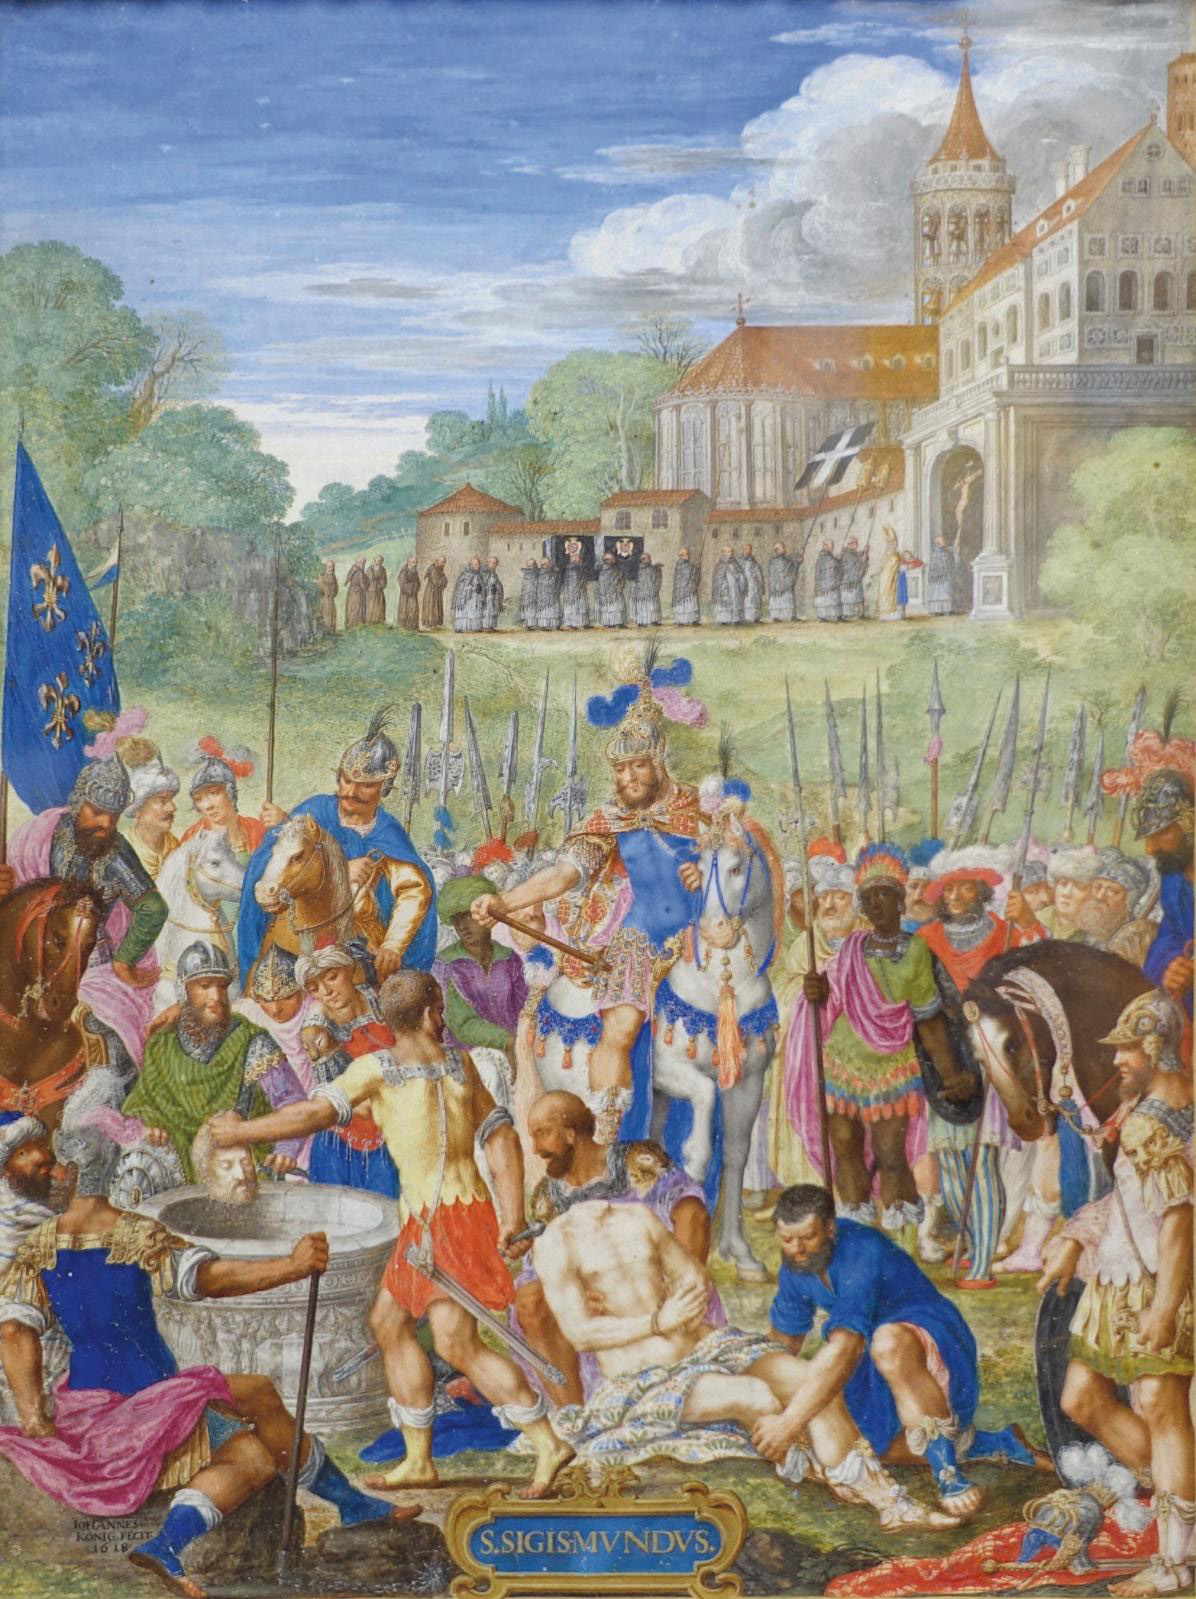 Johann König and the Martyrdom of Sigismond